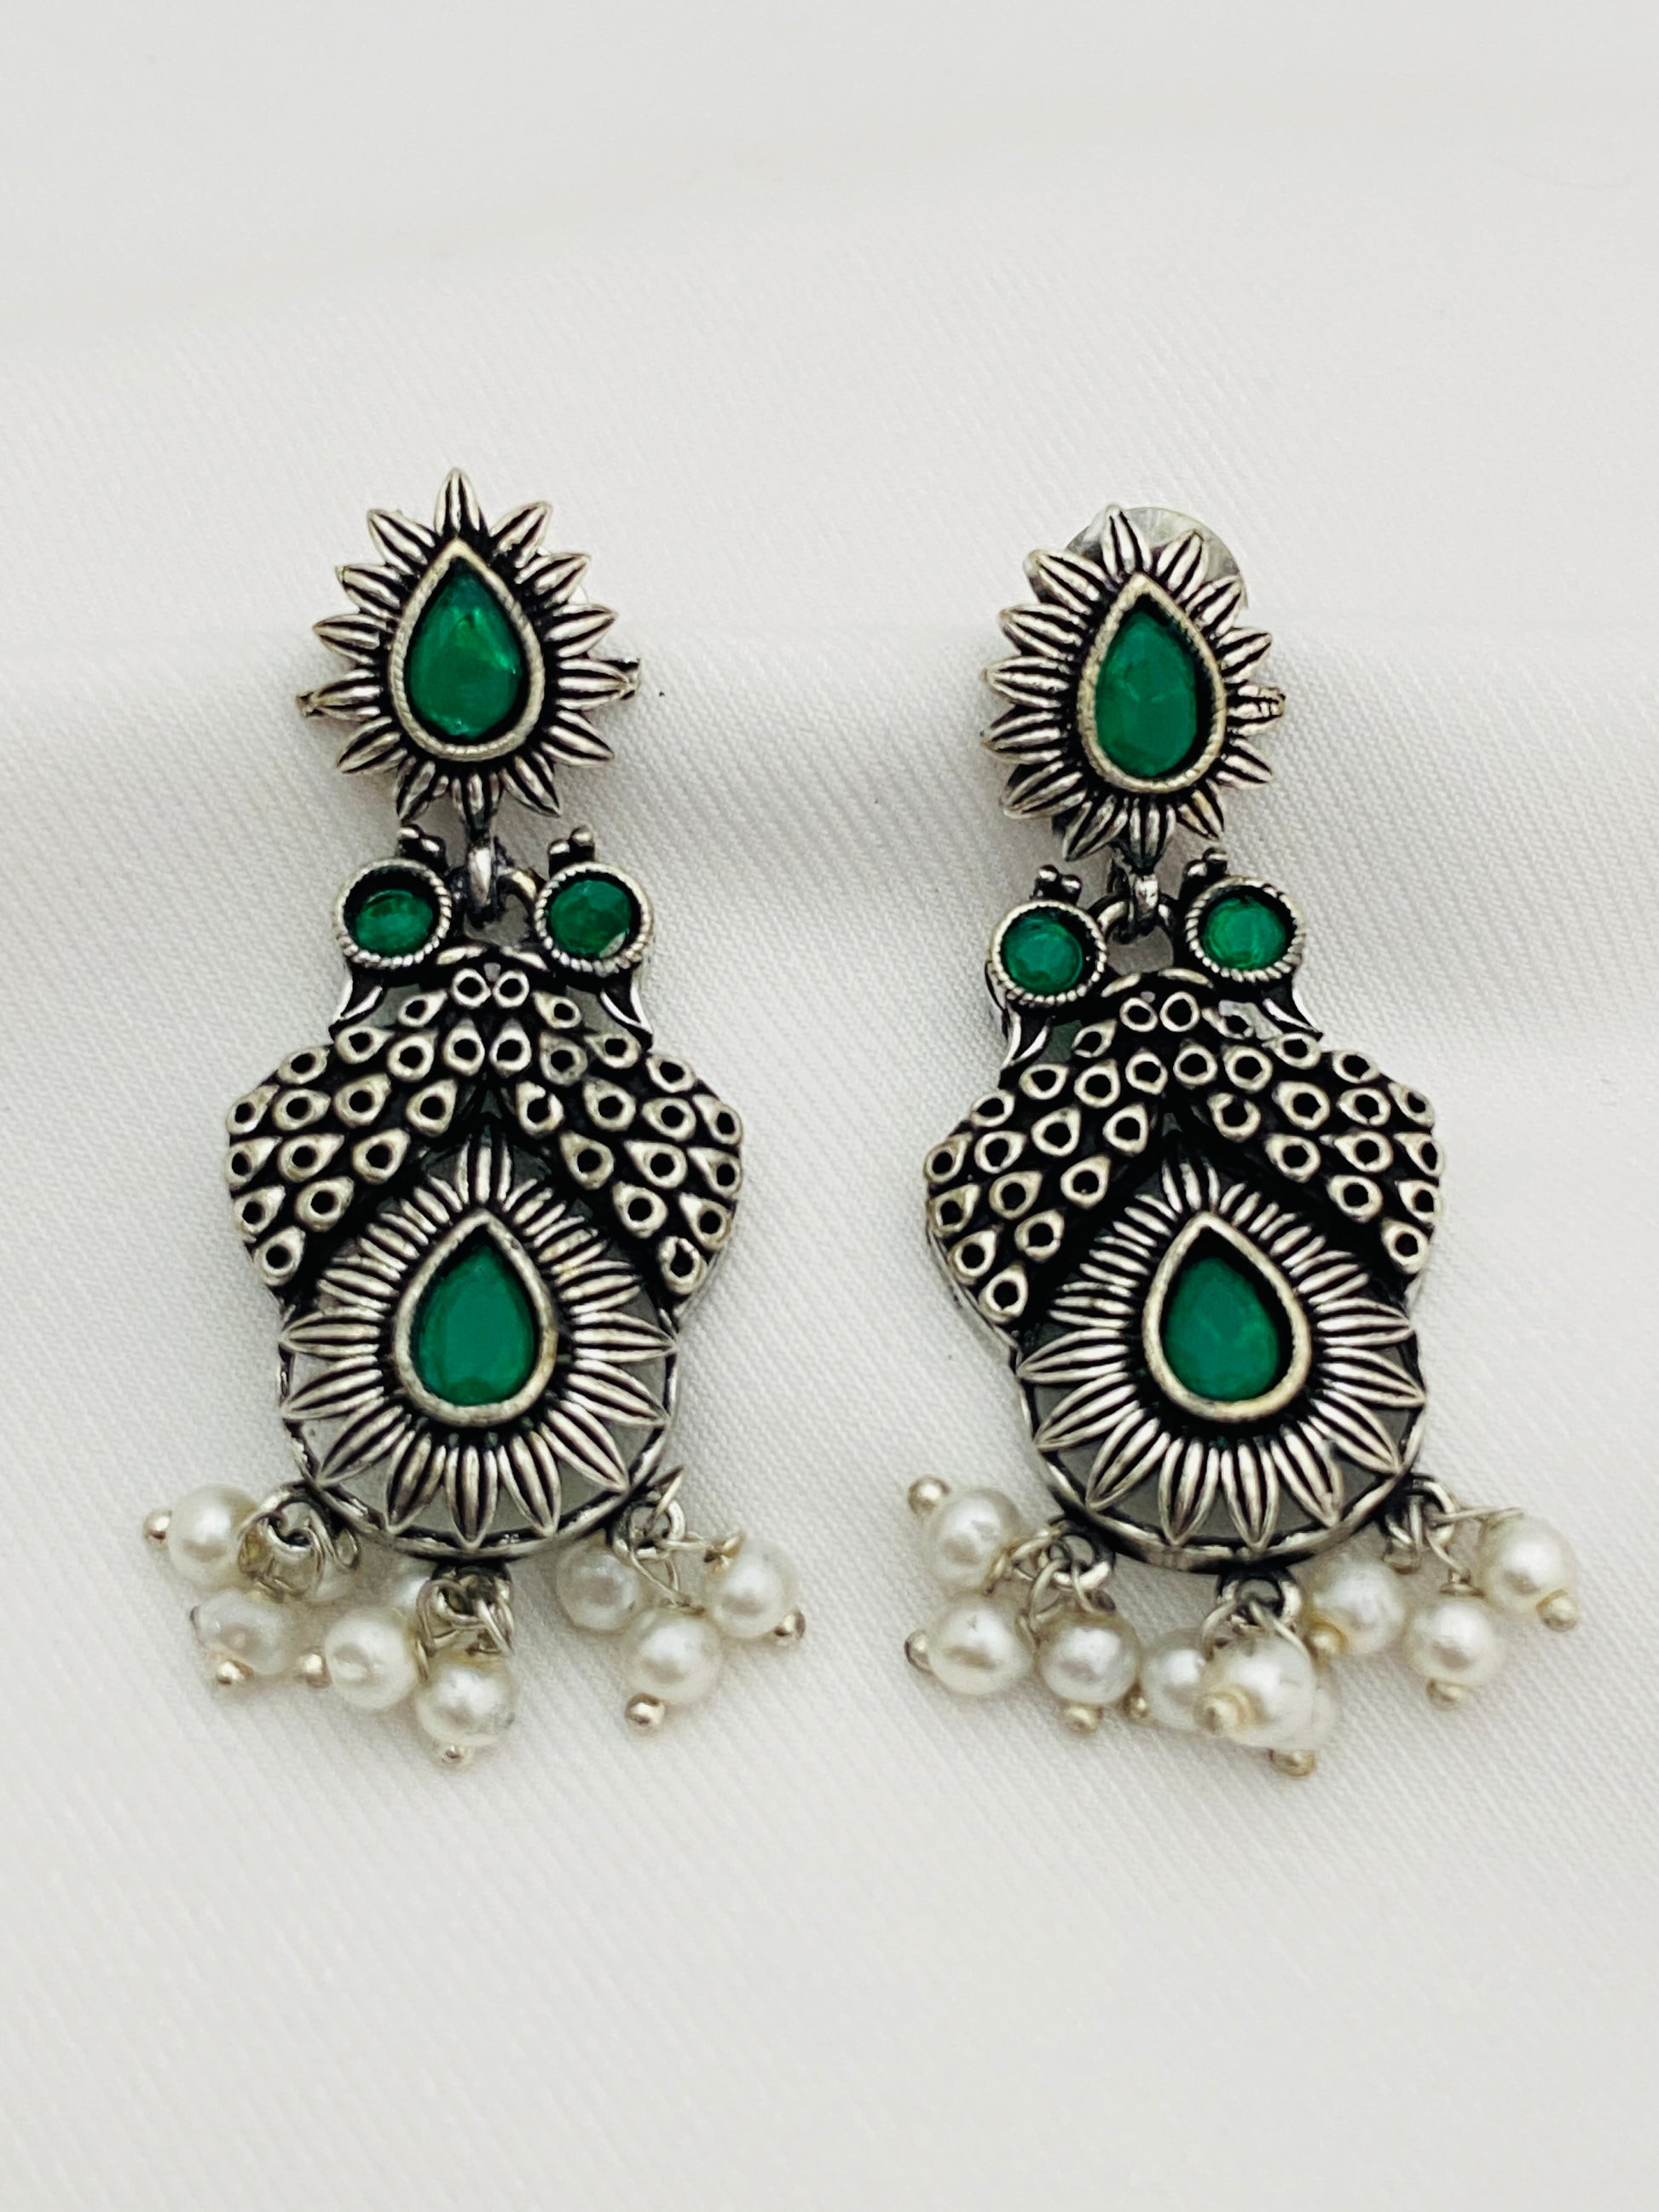 Oxidized Earrings in USA